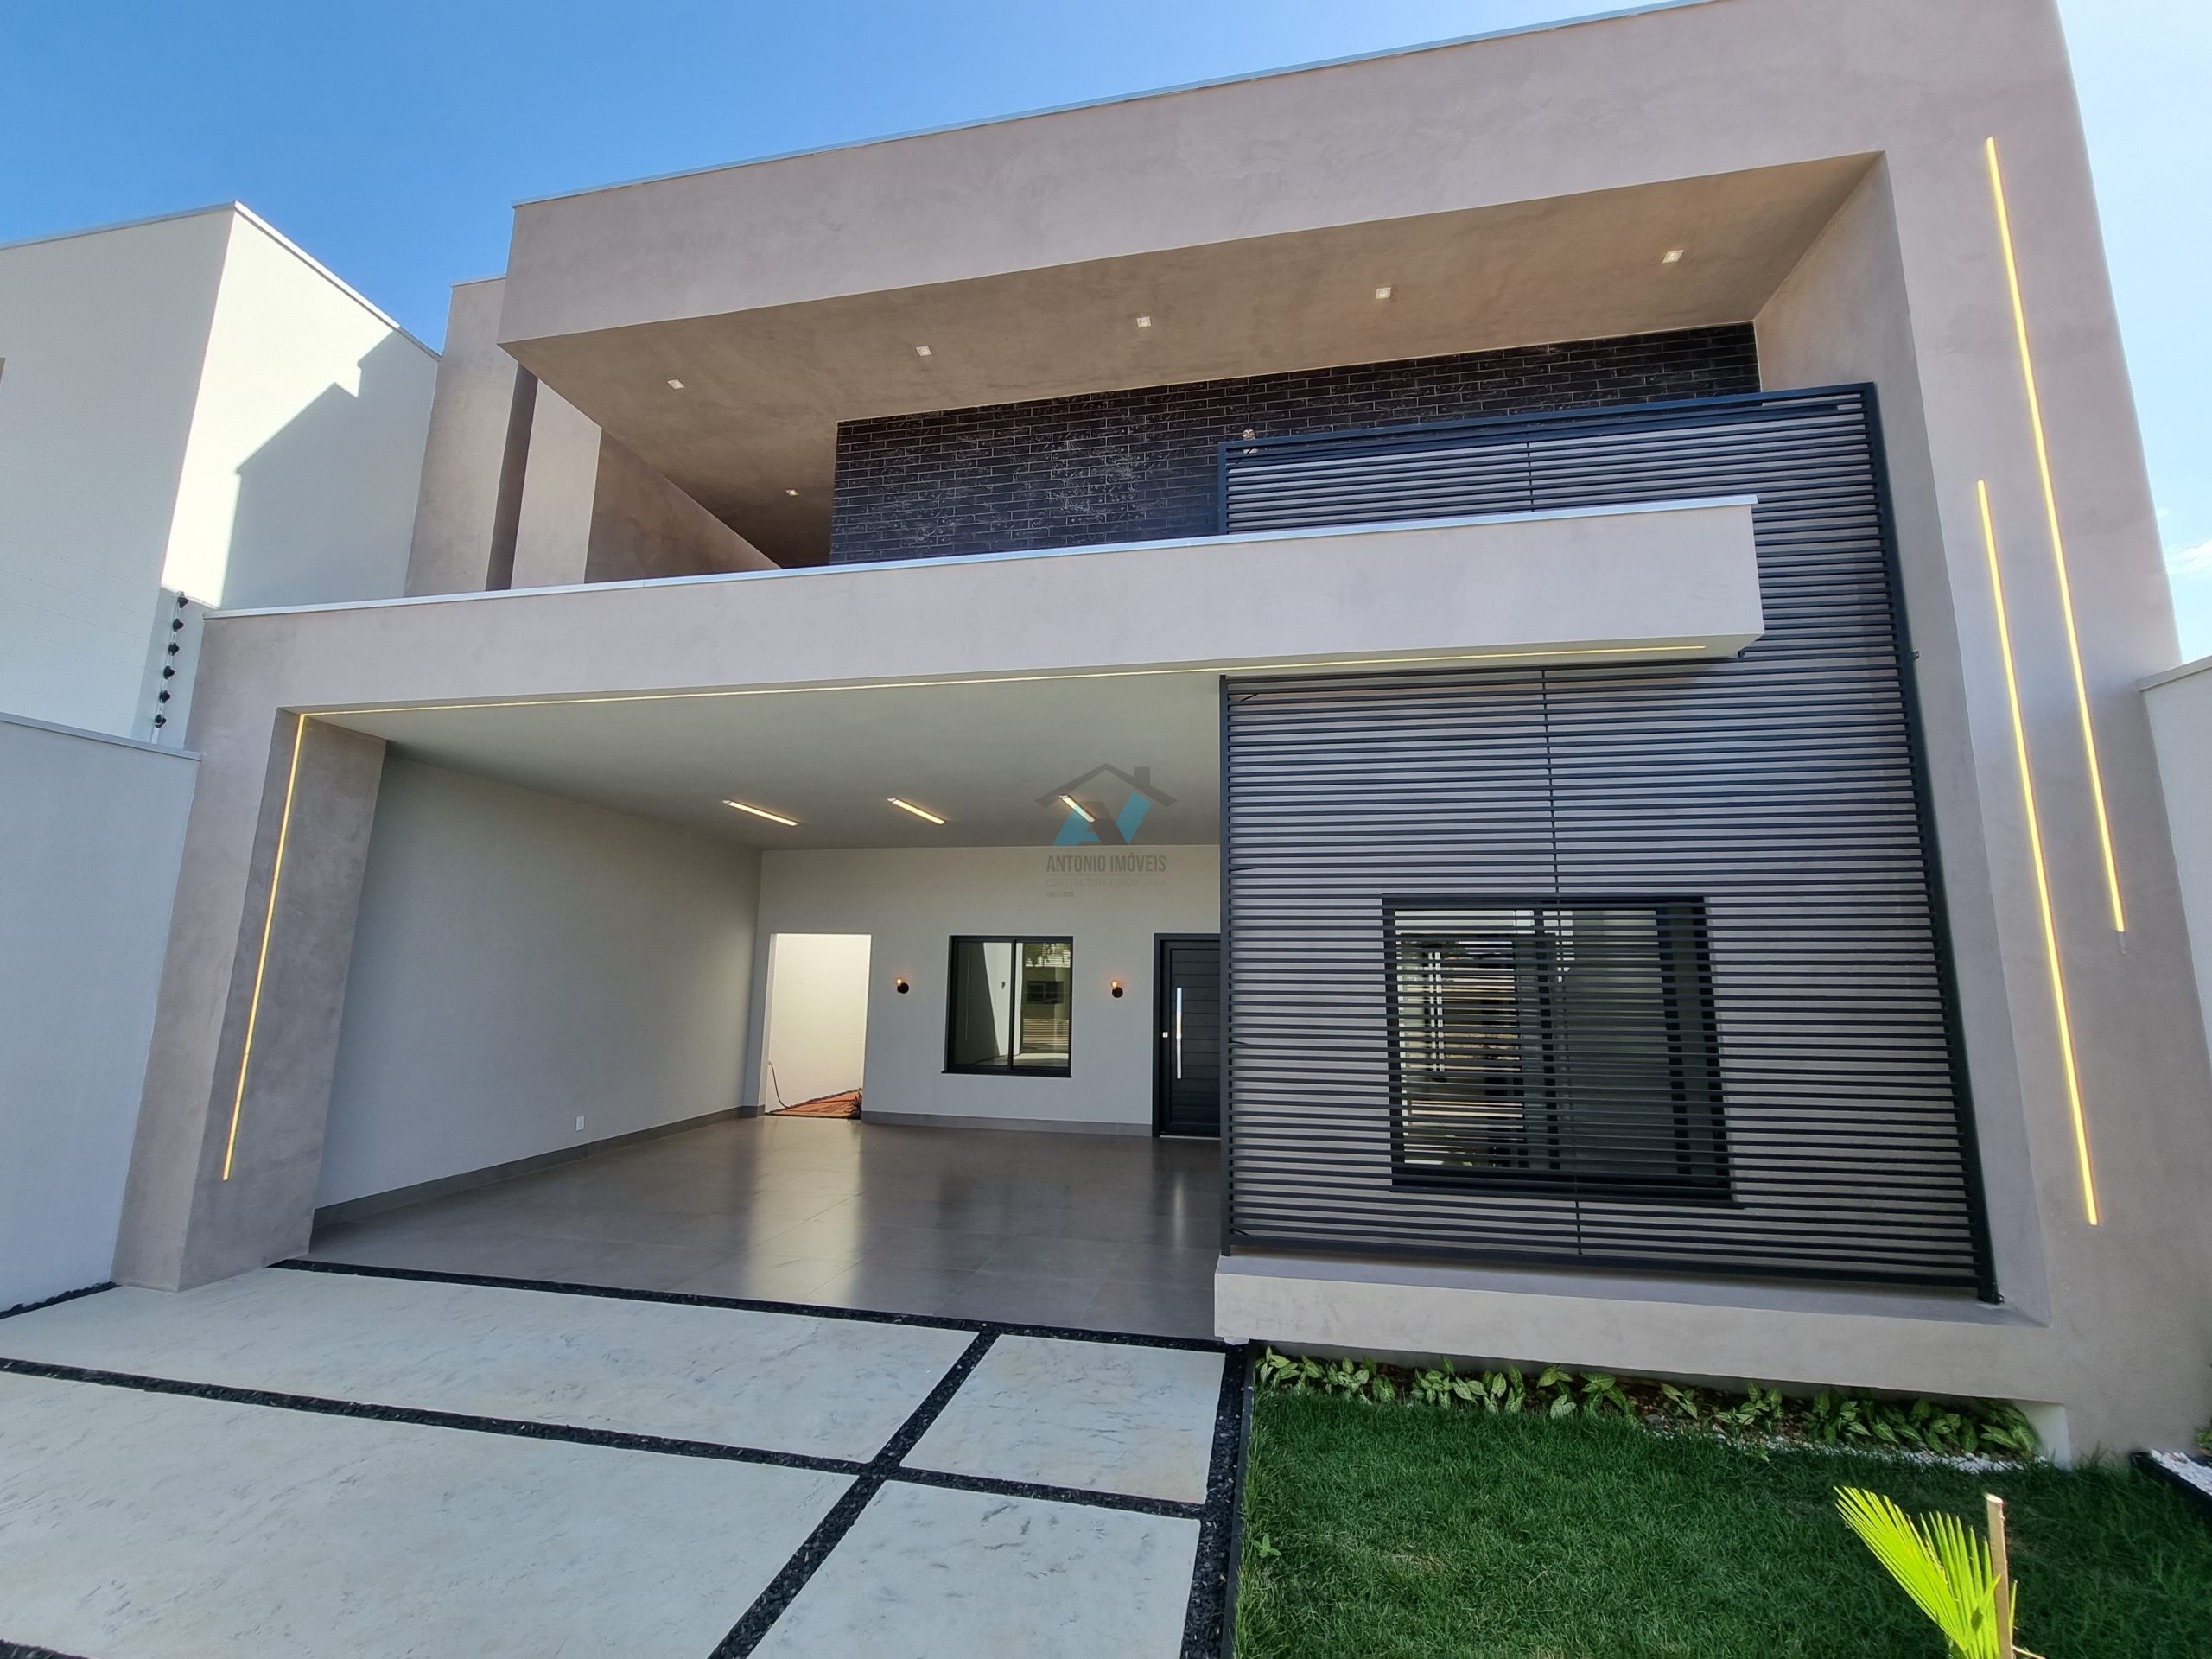 Cod. 289 – Casa pronta no Parque das Águas com designe moderno